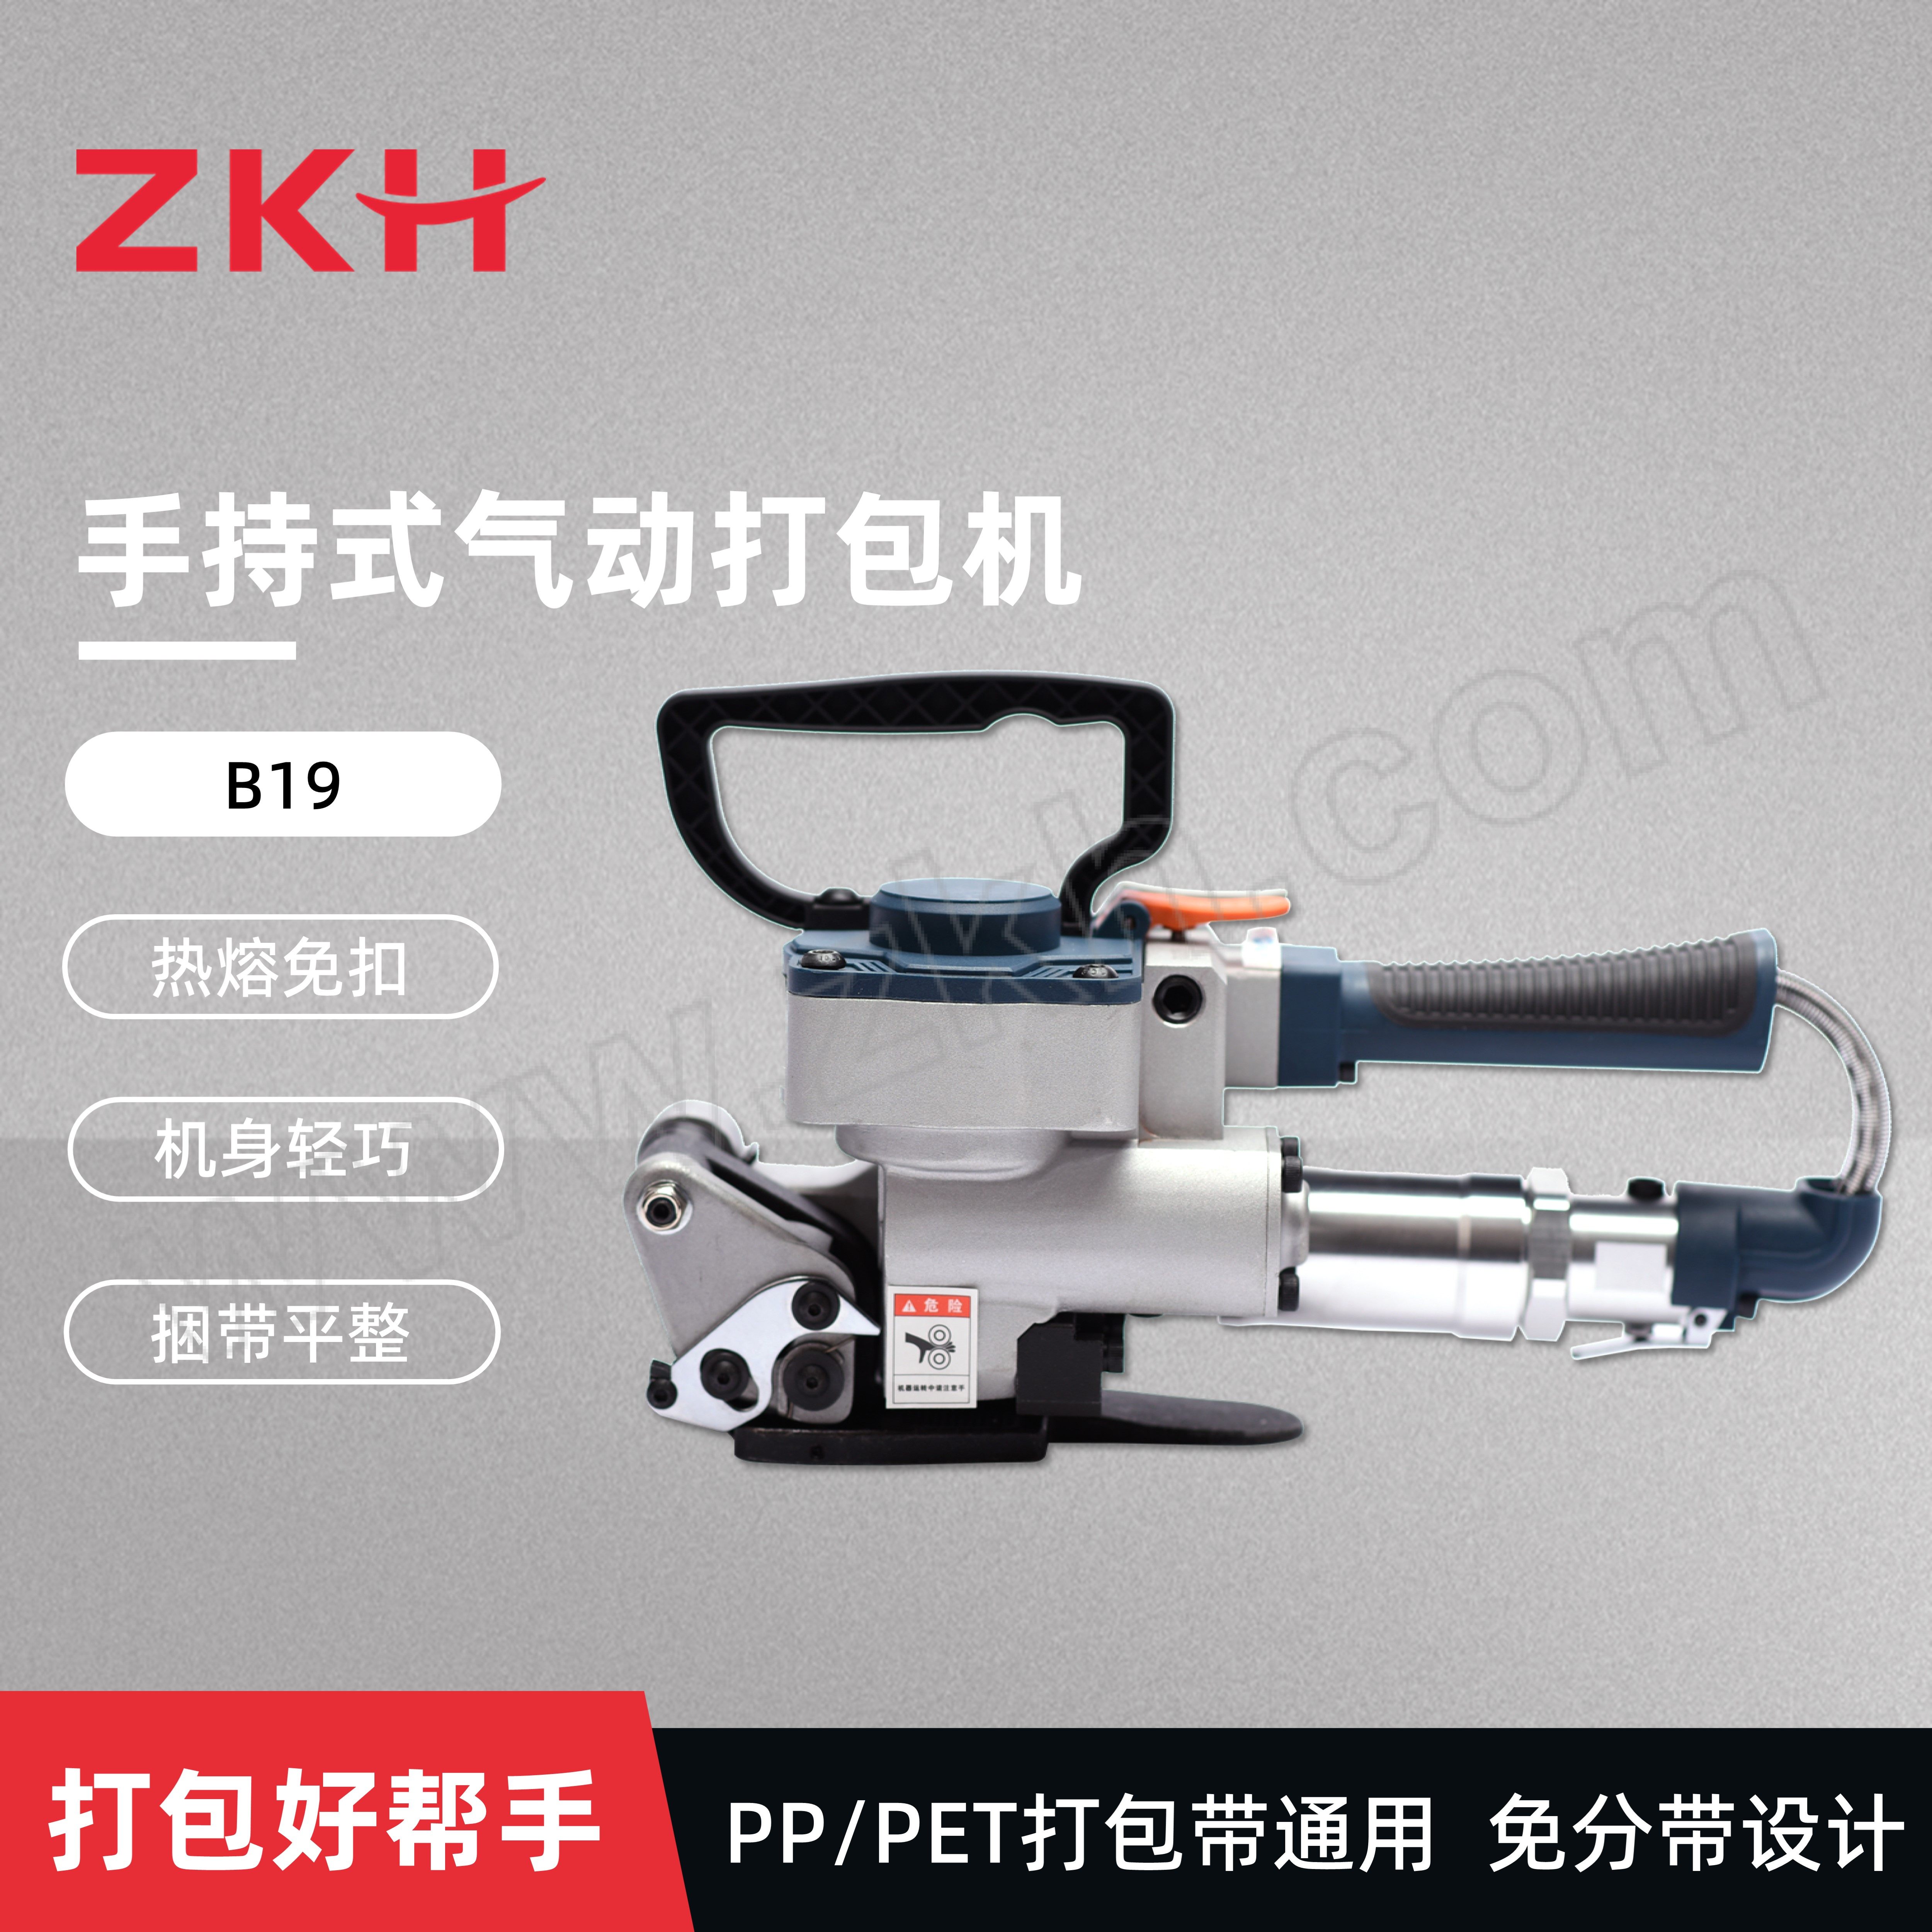 ZKH/震坤行 手持式气动打包机 B19 打包带宽度13~19mm 厚度0.5~1.5mm 拉紧力3500N 1台